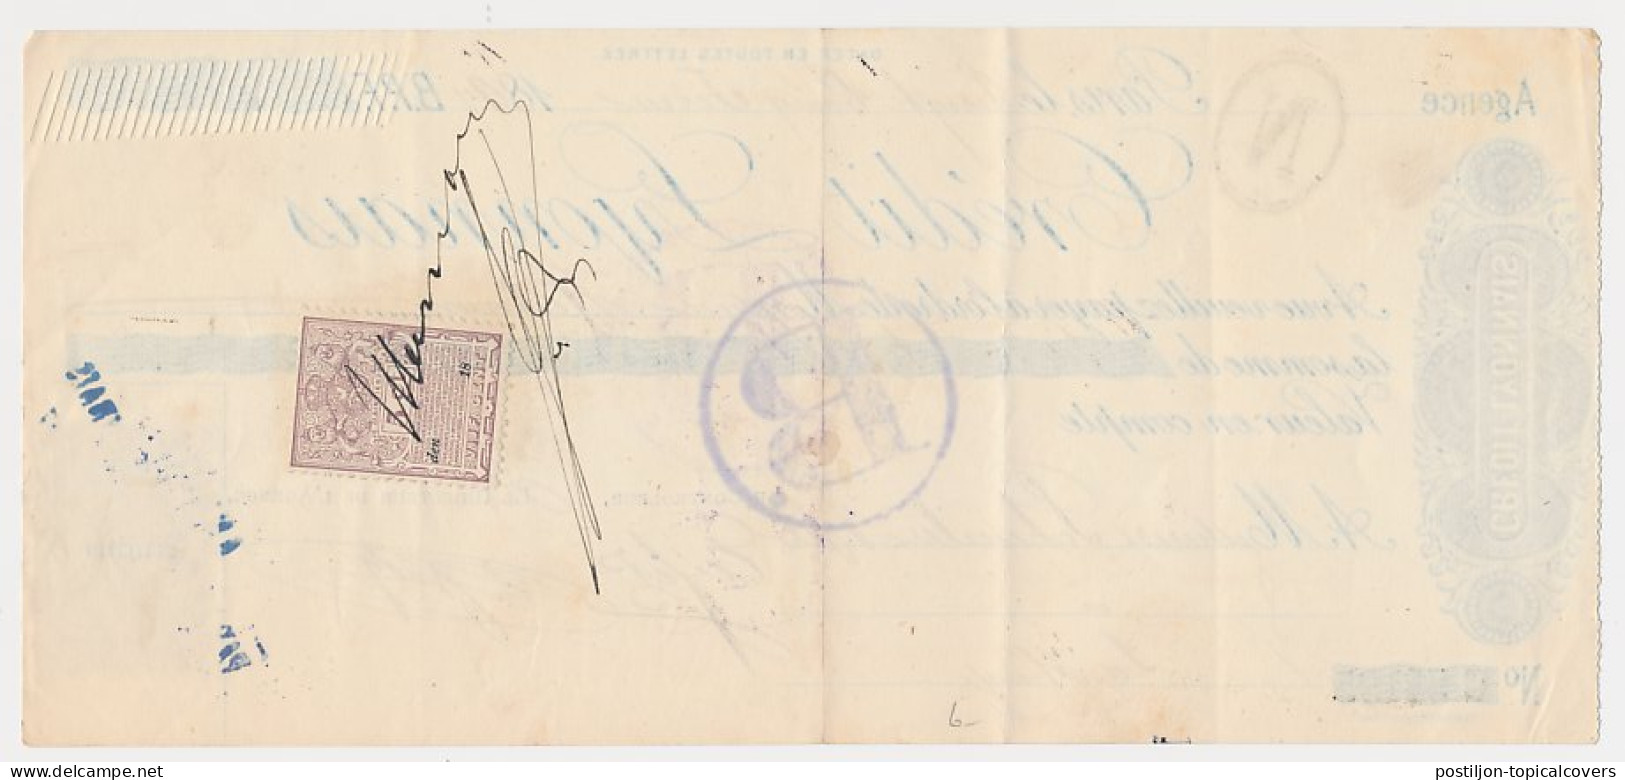 Plakzegel 5 Ct Den 18.. - Wisselbrief Den Haag 1897 - Fiscale Zegels